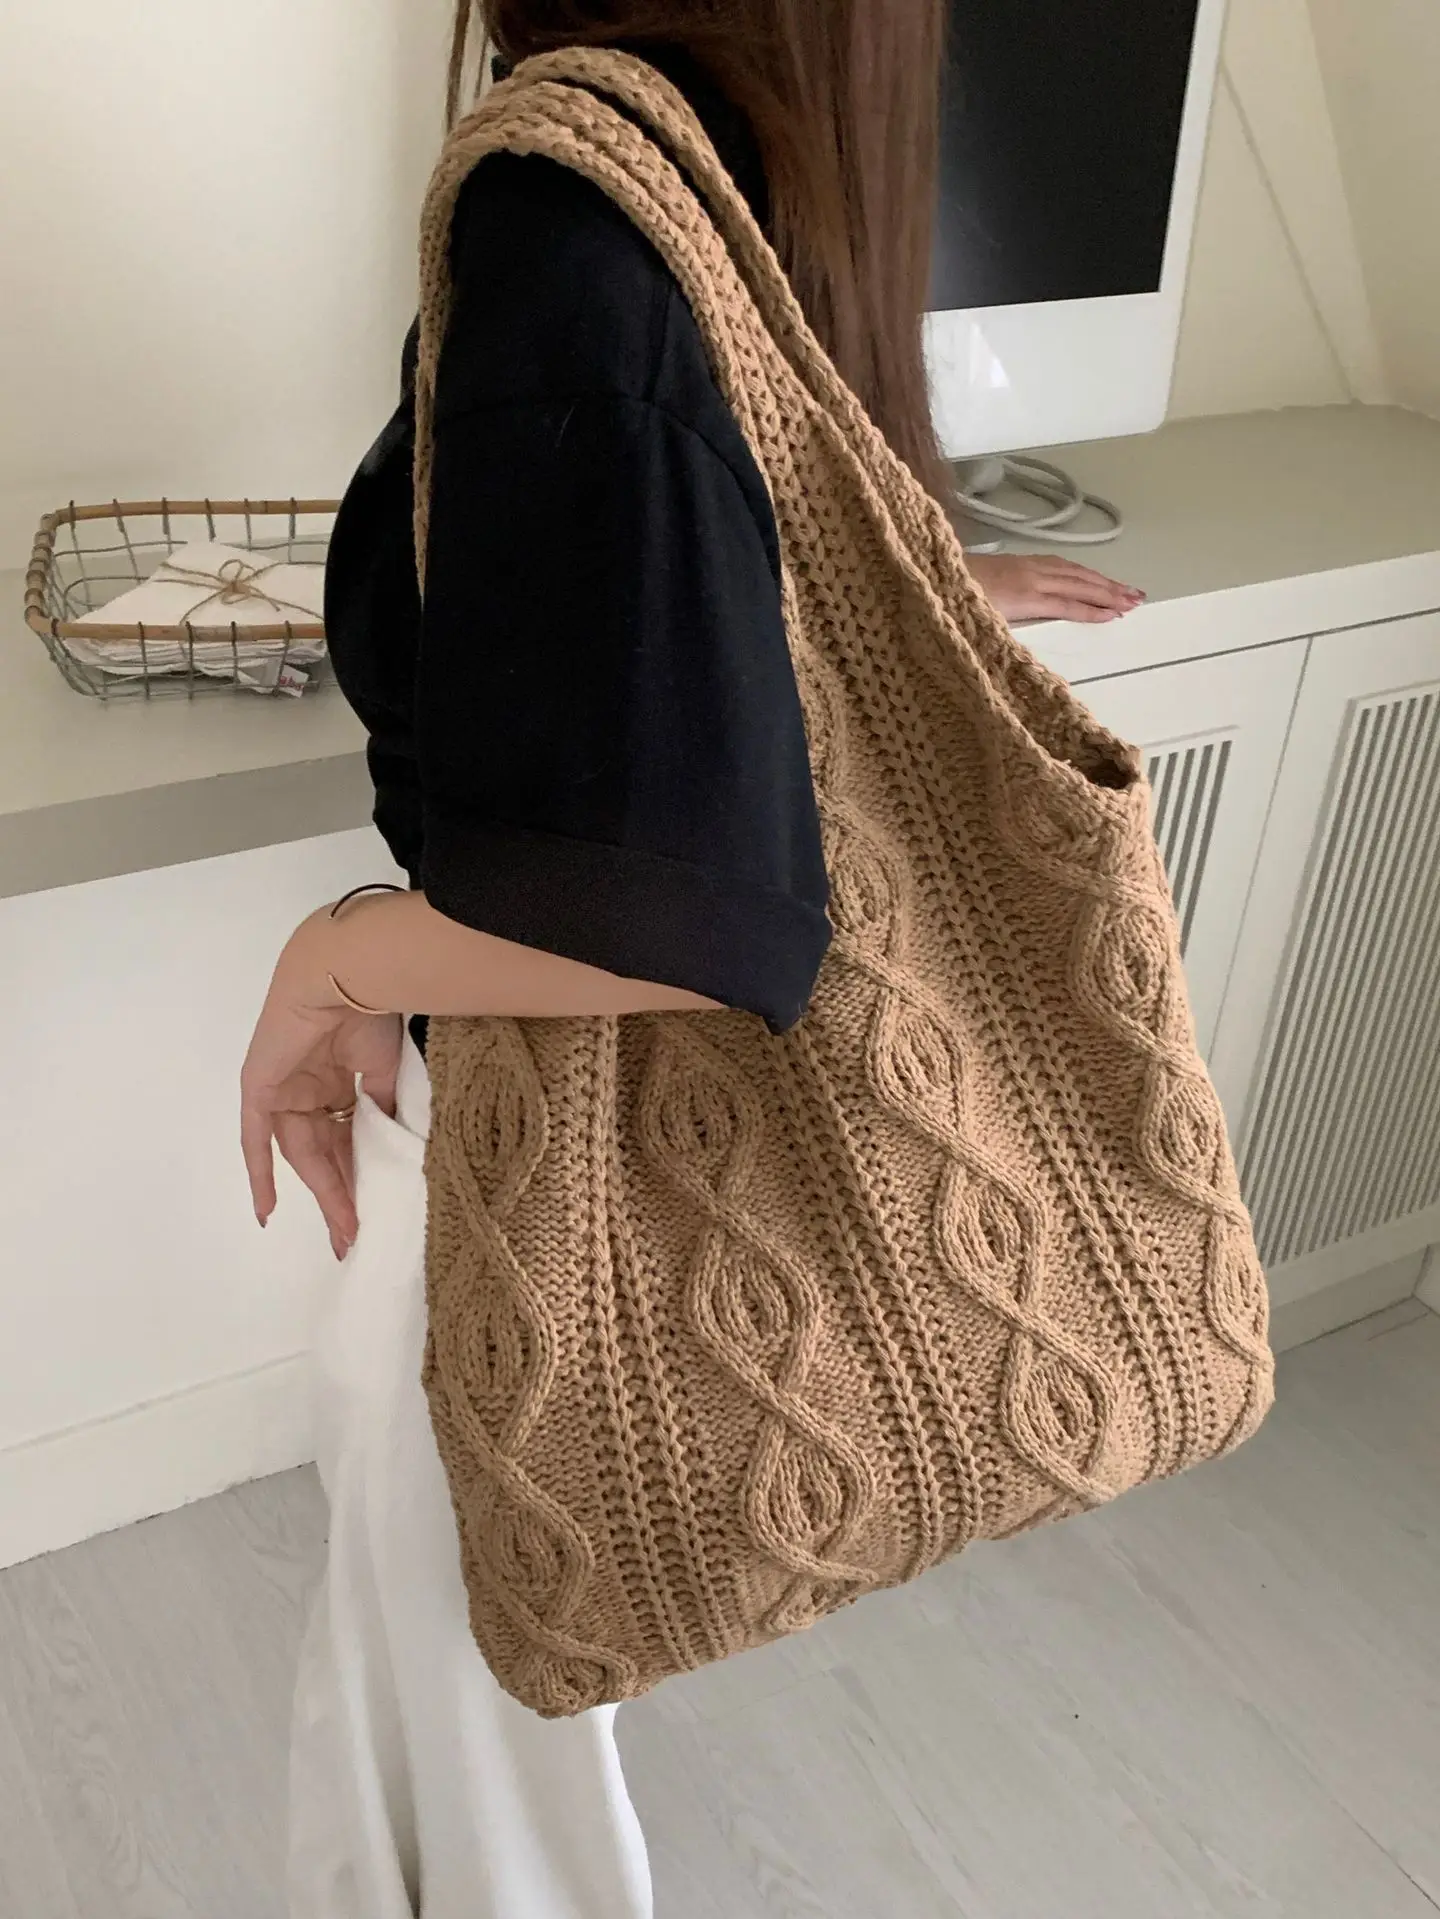 

Wool Large Knit Bag Shoulder Shopping Bag for Women Vintage Cotton Cloth Girls Tote Shopper Bag Large Female Handbag Crochet Bag